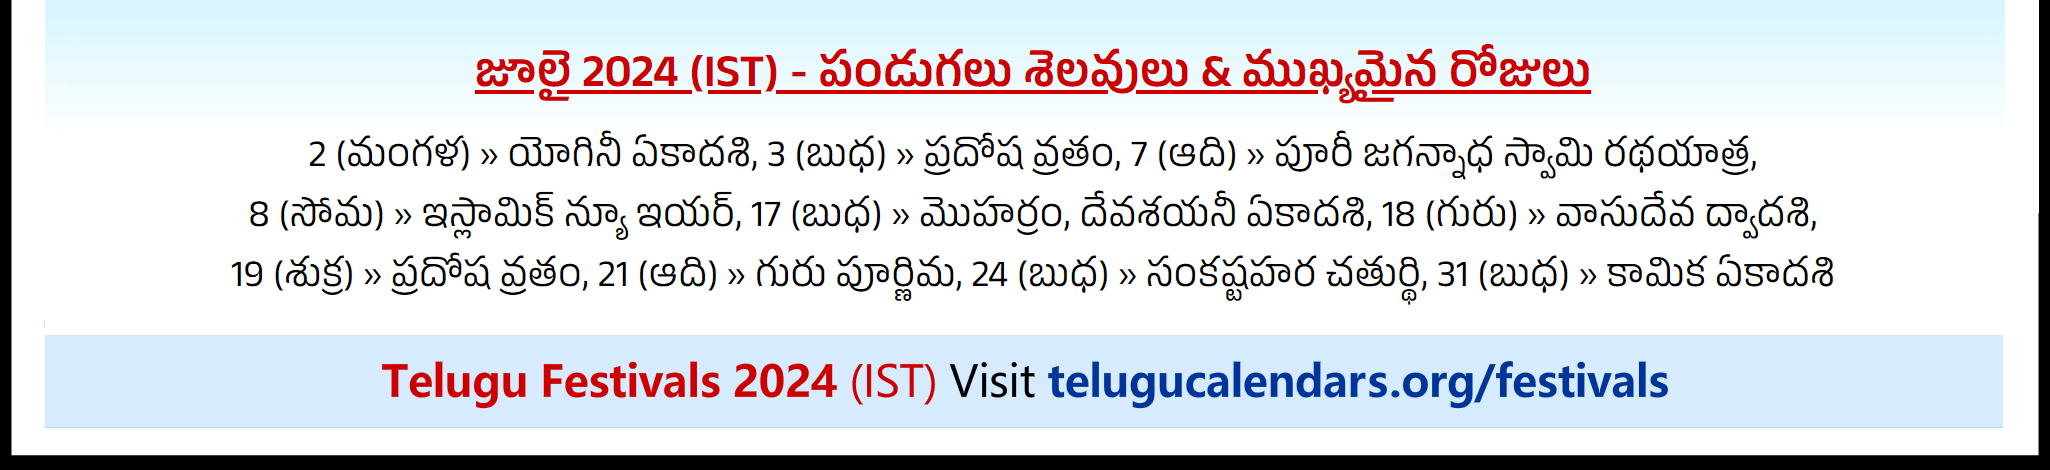 Telugu Festivals 2024 July Singapore